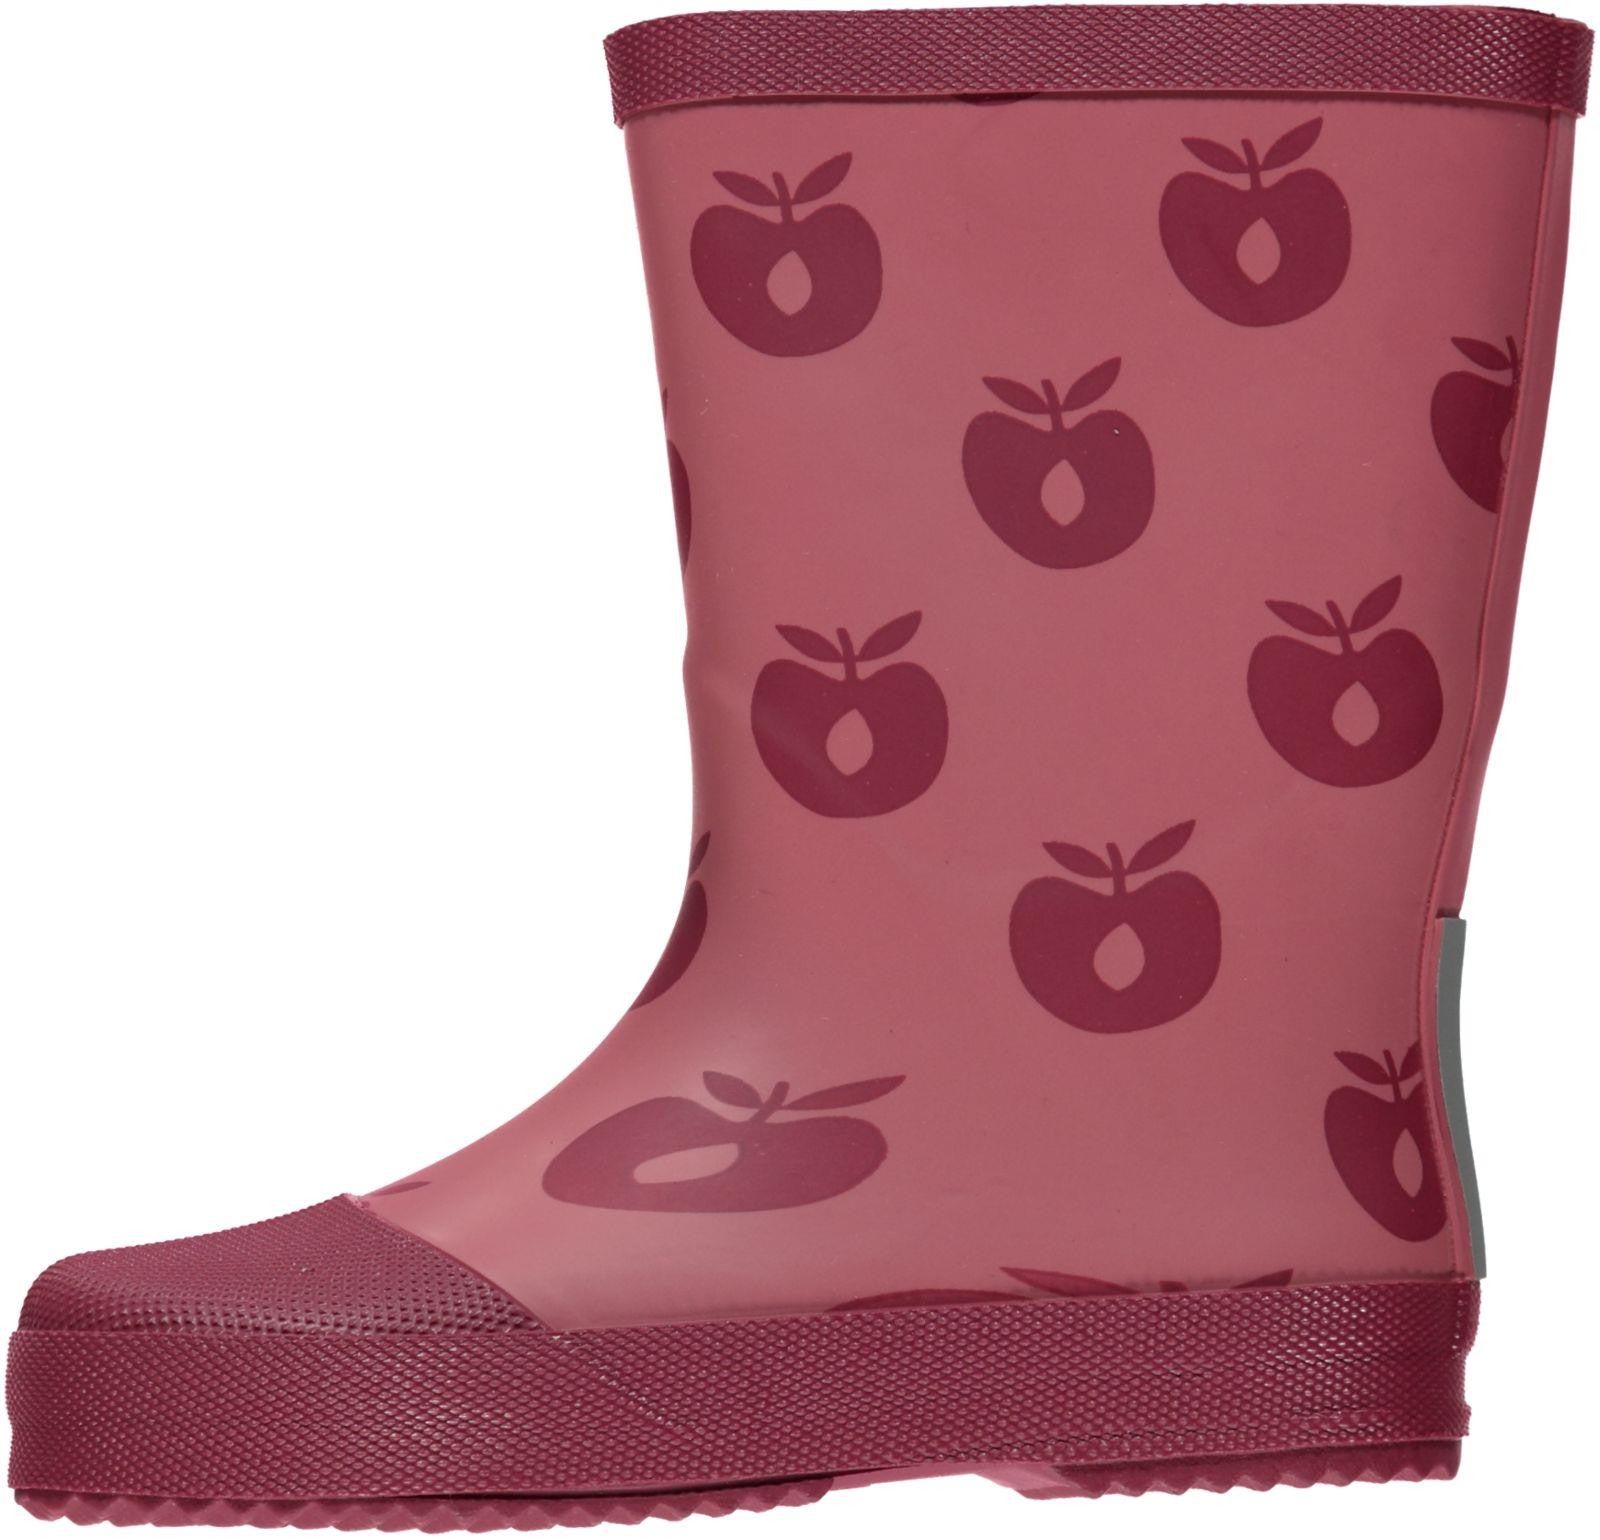 Smafolk Donker Roze Regenlaarzen Appels - Mesa Roze Rain Boots Apple